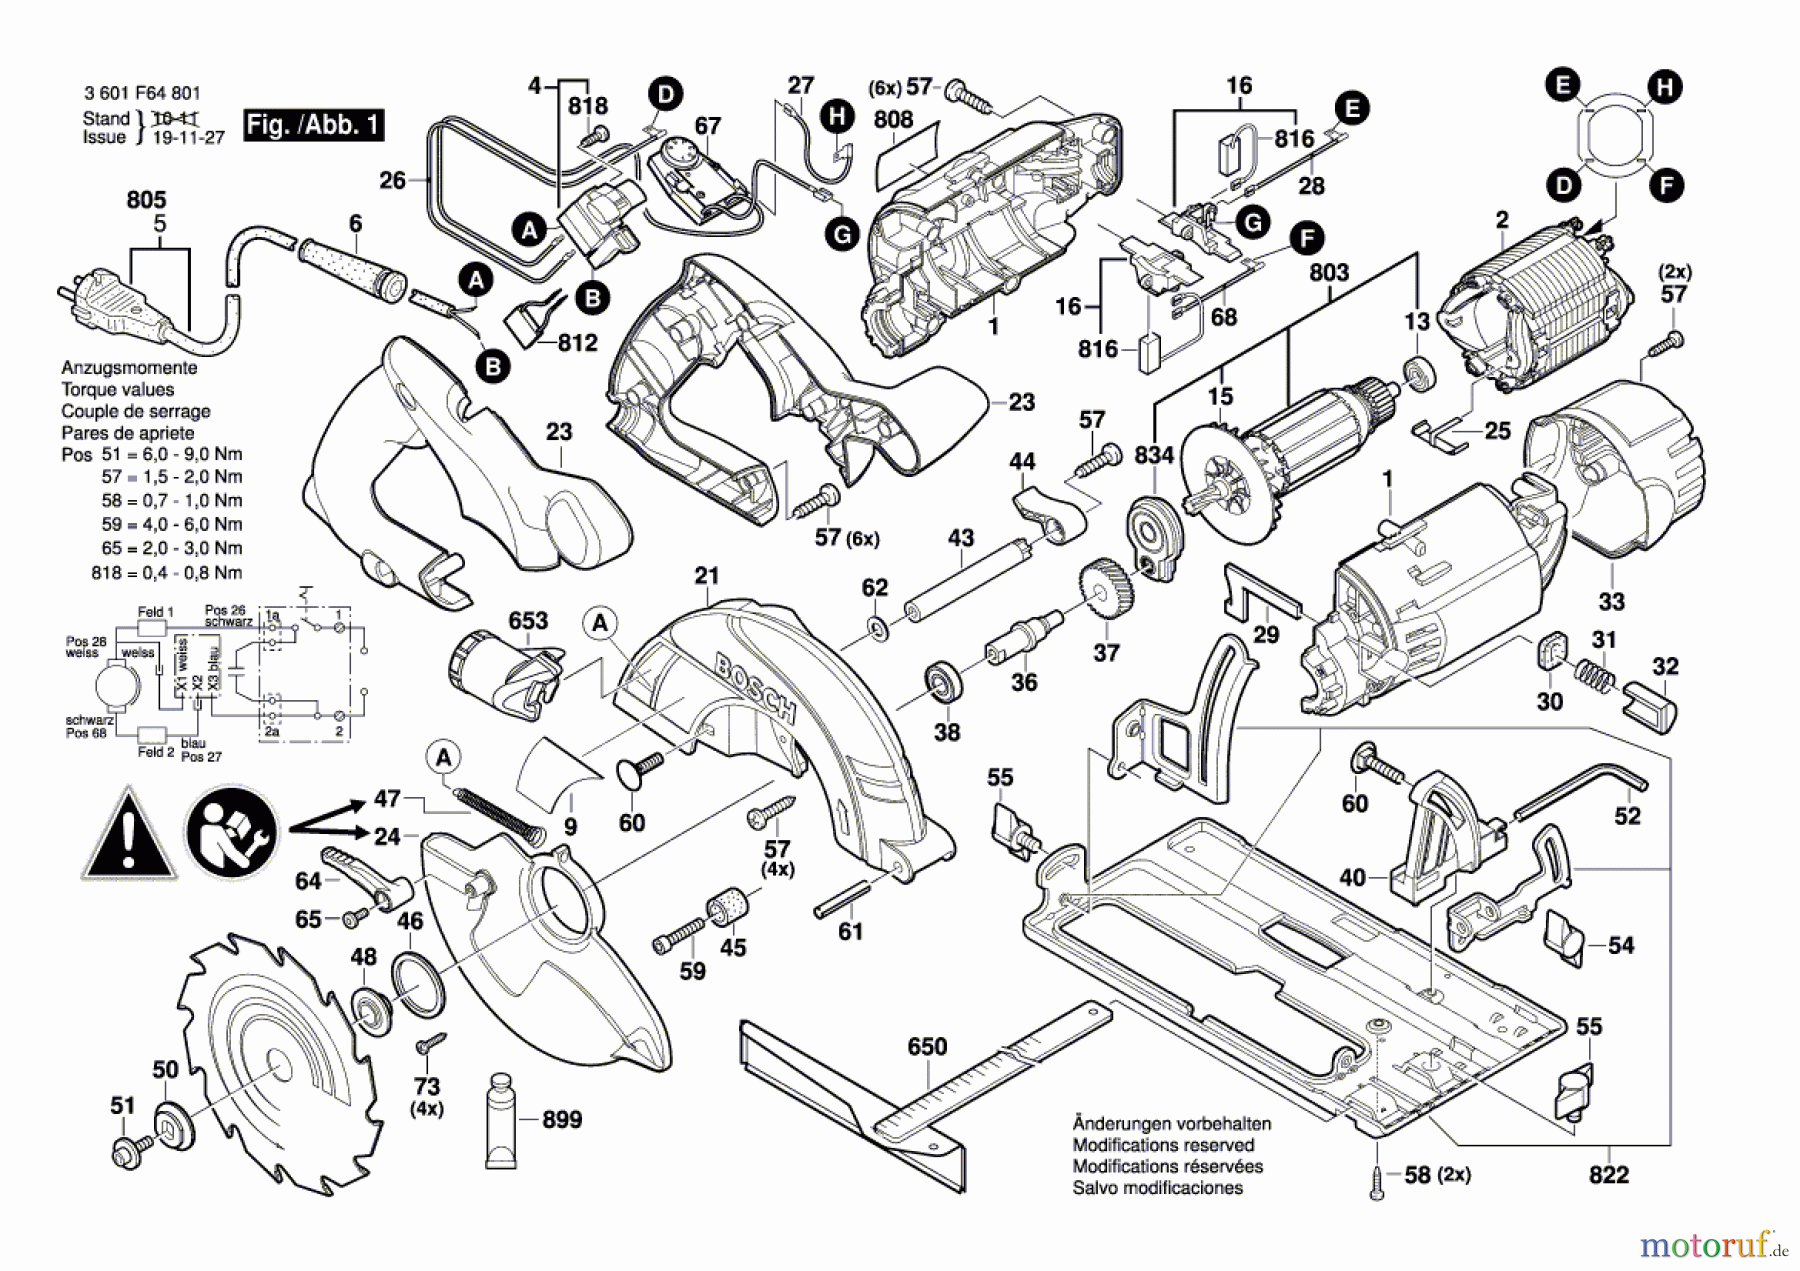  Bosch Werkzeug Handkreissäge GKS 55 CE Seite 1